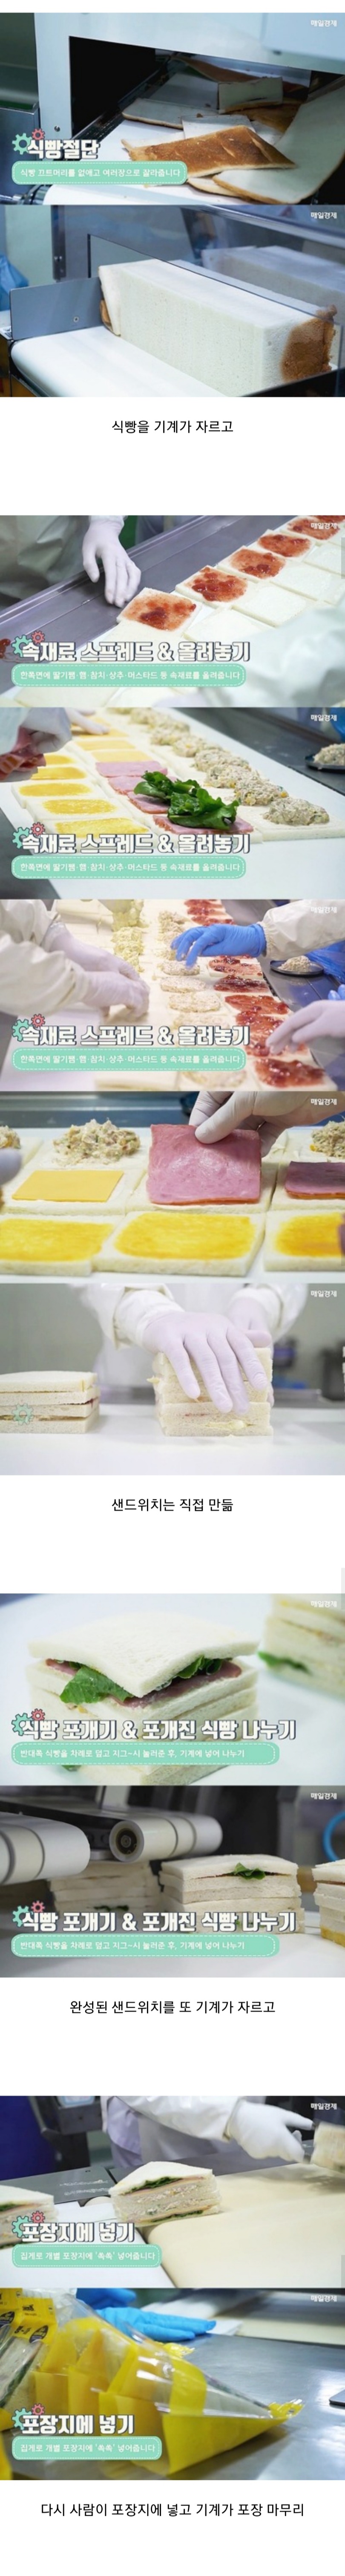  편의점 샌드위치 제조 과정